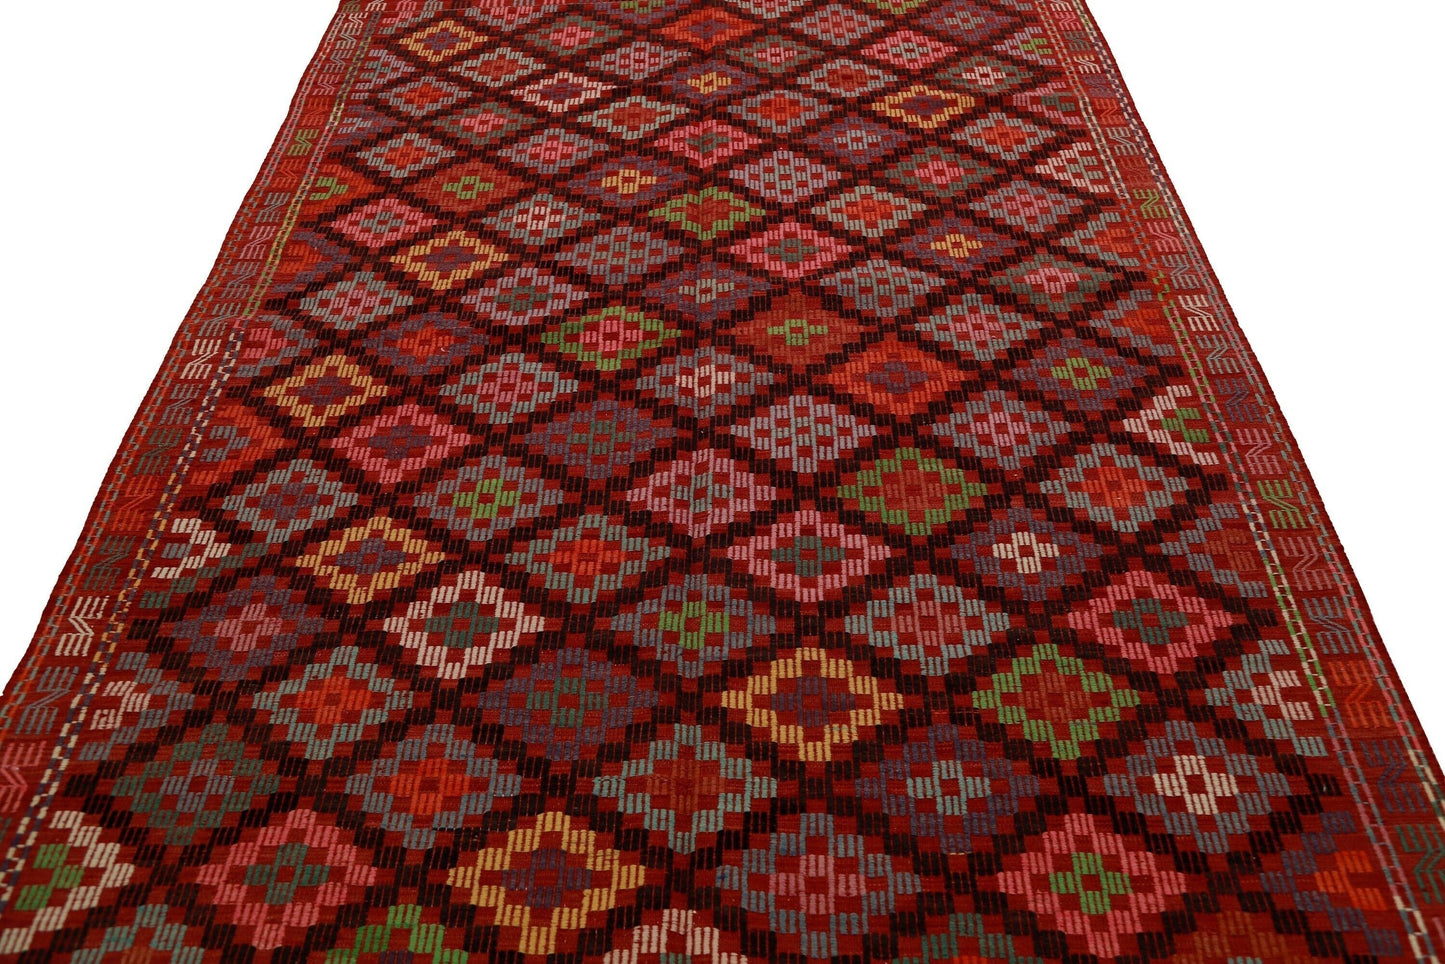 Geometric Kilim Rug, Persian Kilim Rug, Turkey Rug 6x9, Old Rug, Area Kilim Rug, Handmade Kilim, Ethnic Rug, Oriental Rug, Vintage Rug, 2877